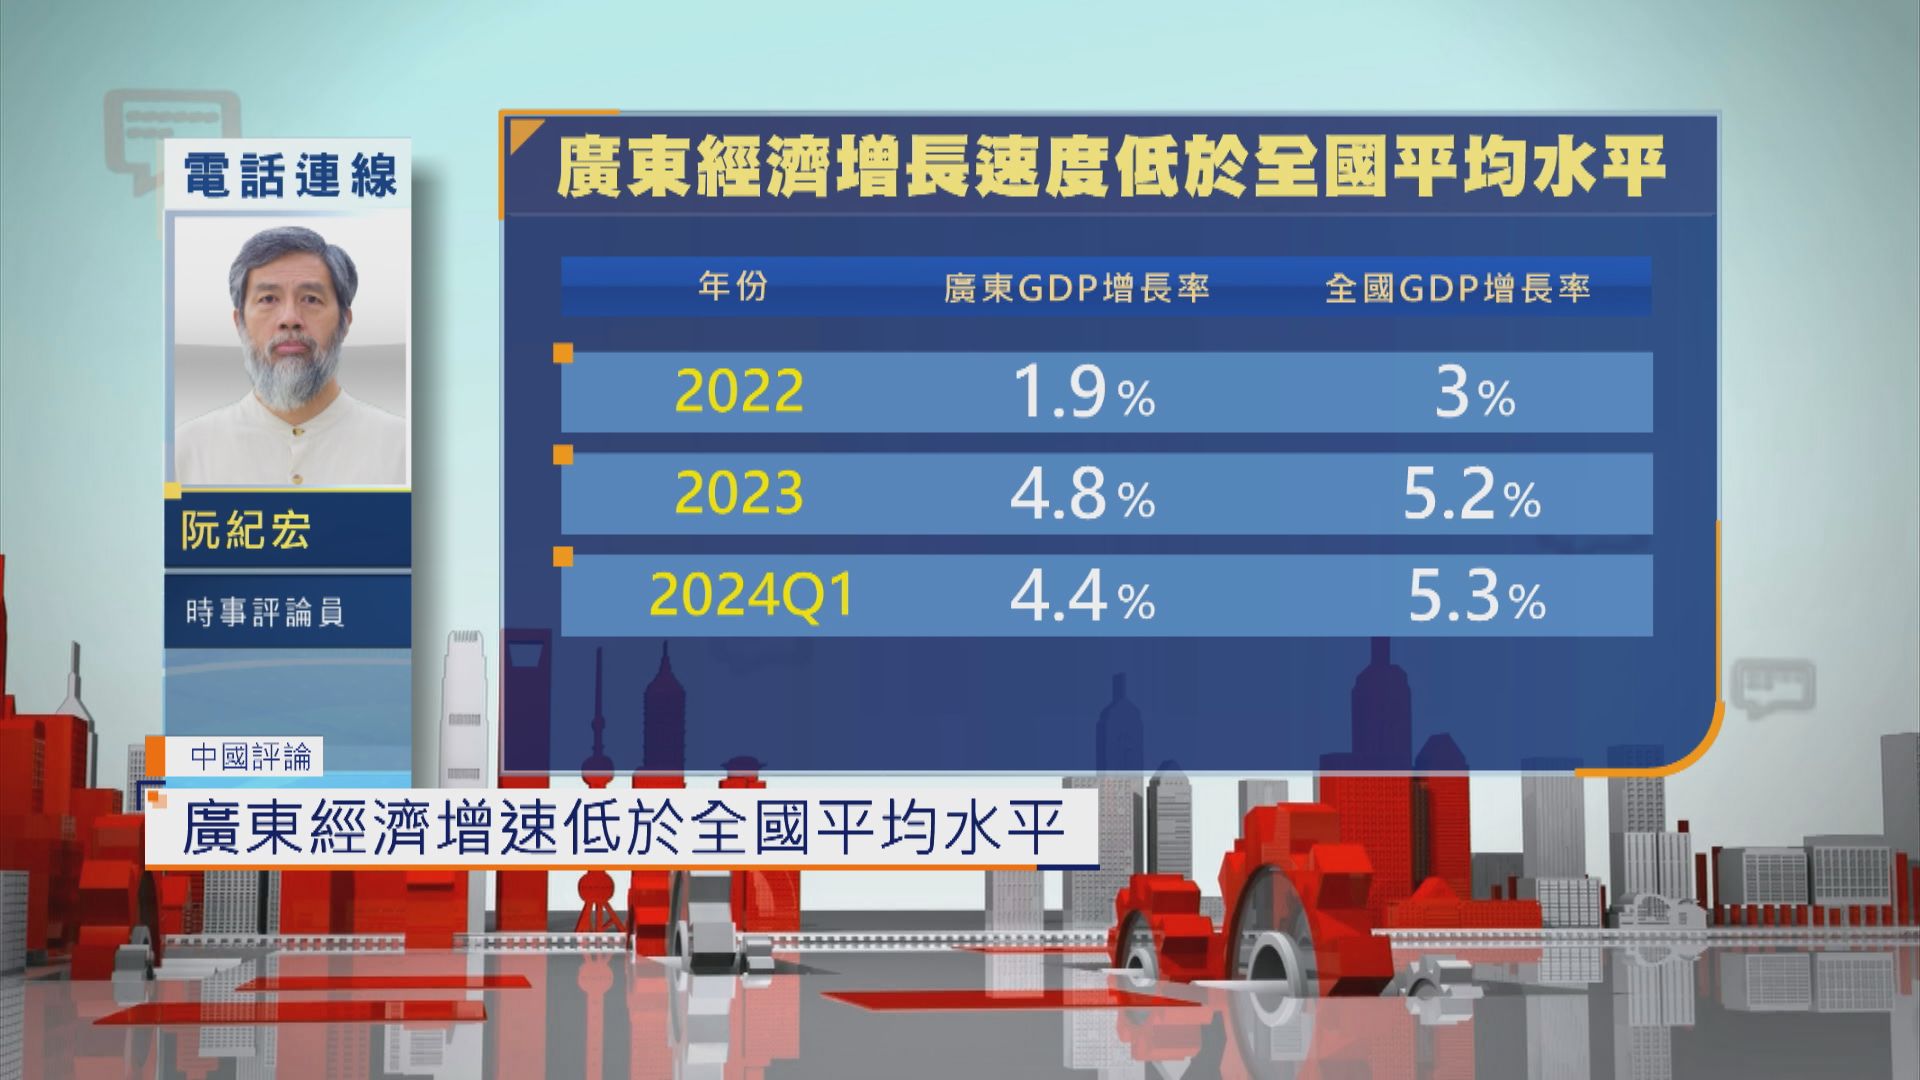 【中國評論】廣東經濟增長速度低於全國平均水平